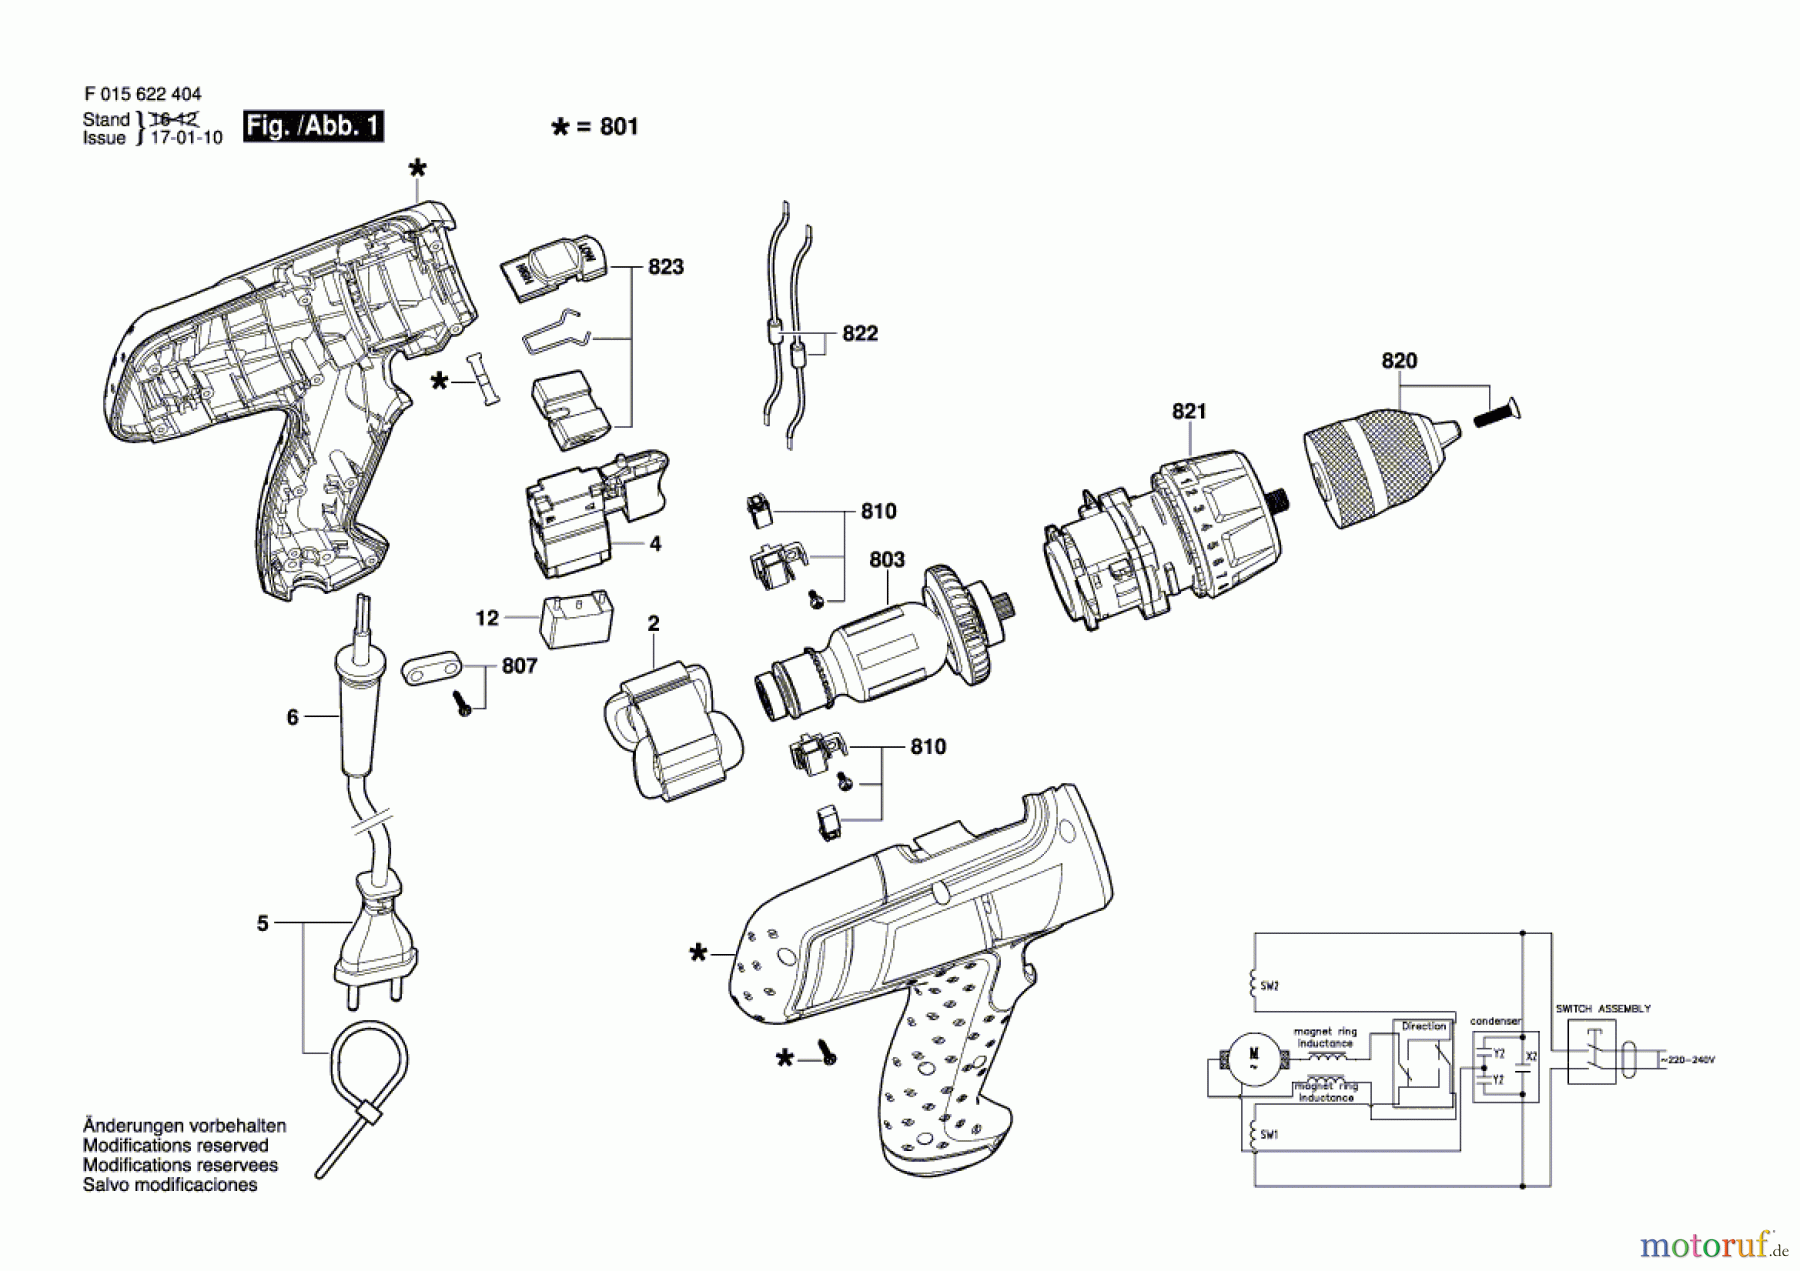  Bosch Werkzeug Bohrschrauber 6224 Seite 1